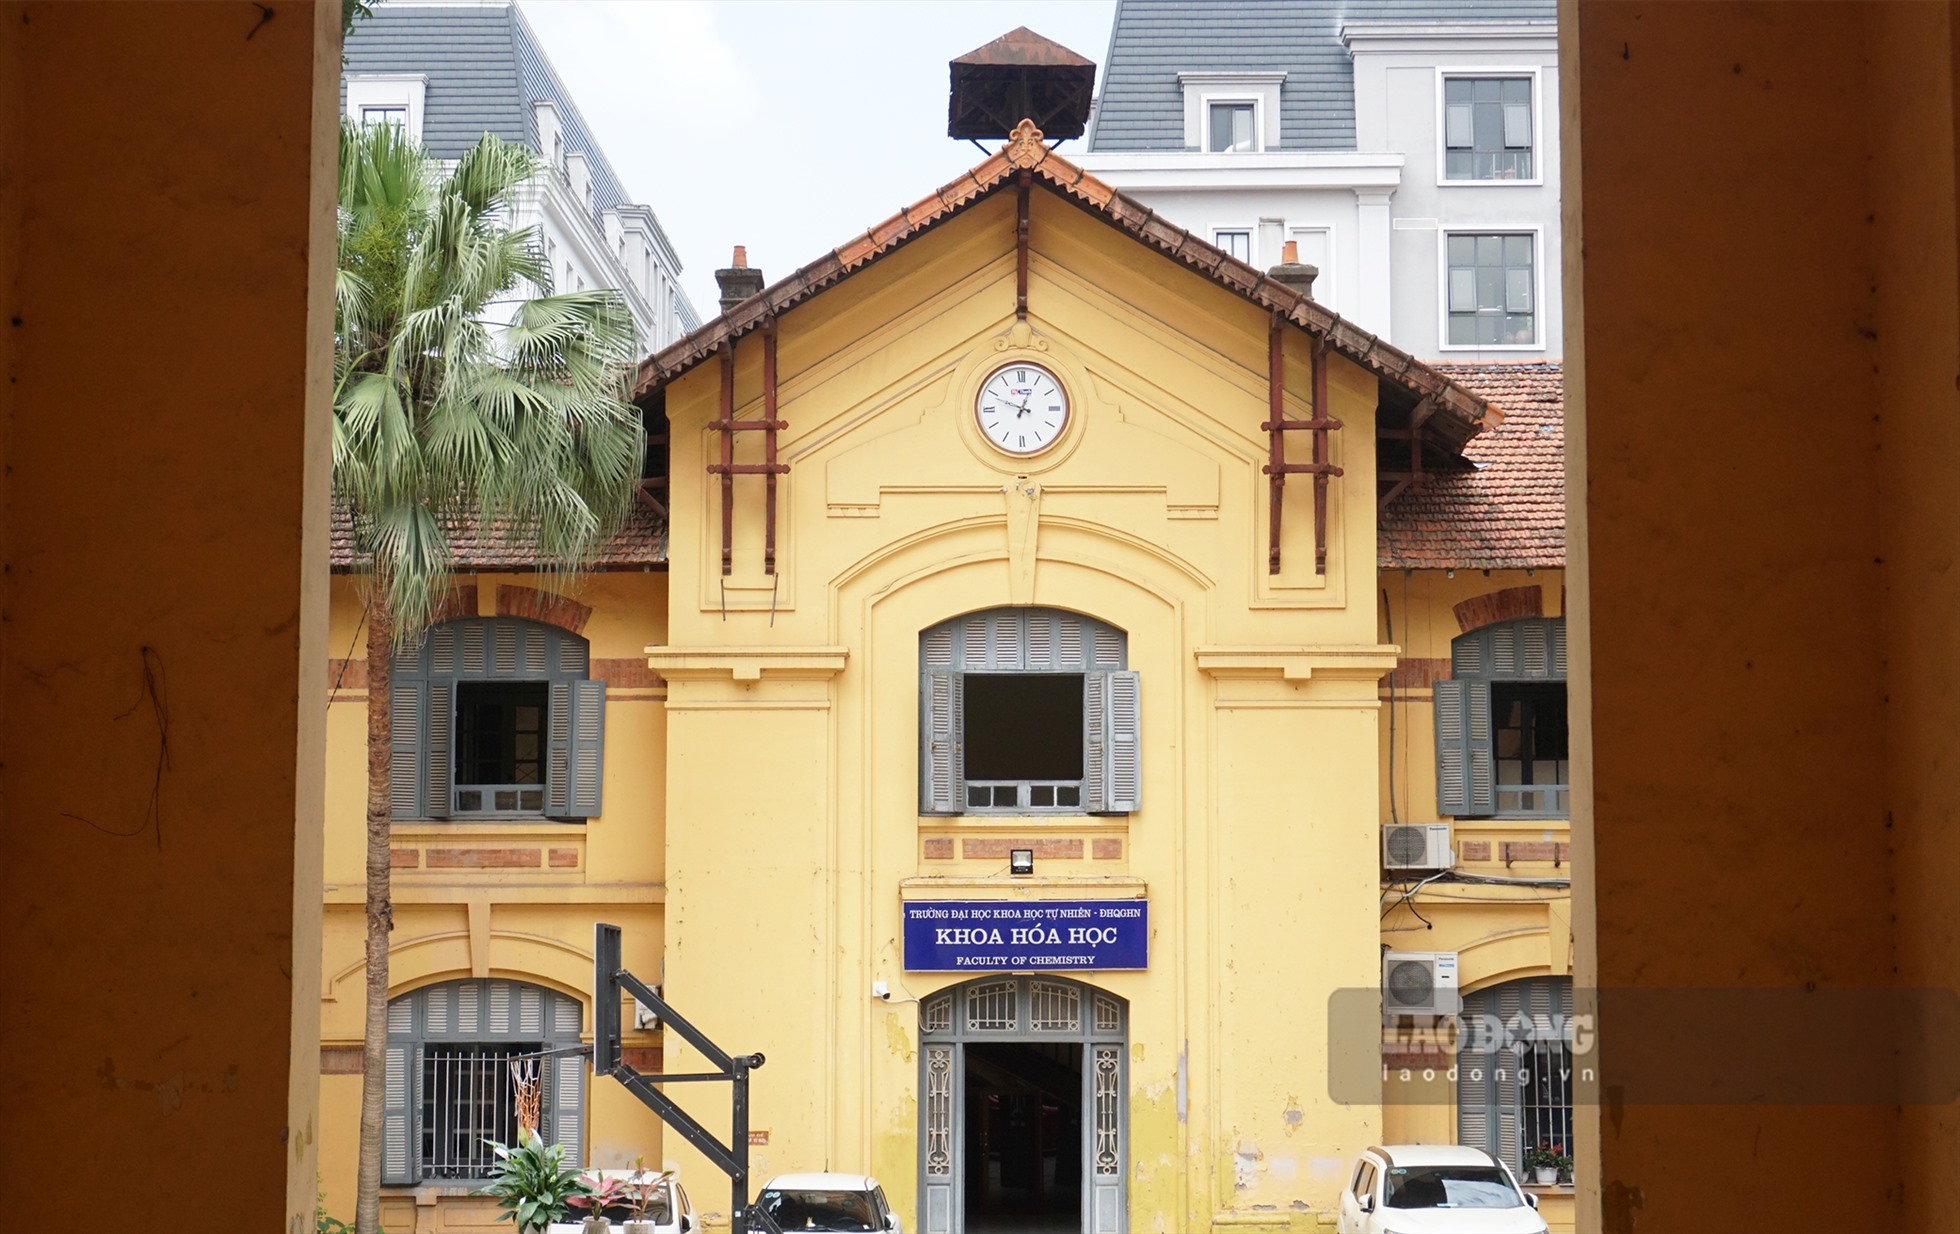 Mỗi khoa, bộ môn của trường đều có tòa nhà riêng với lối kiến trúc độc đáo từ thời Pháp thuộc.